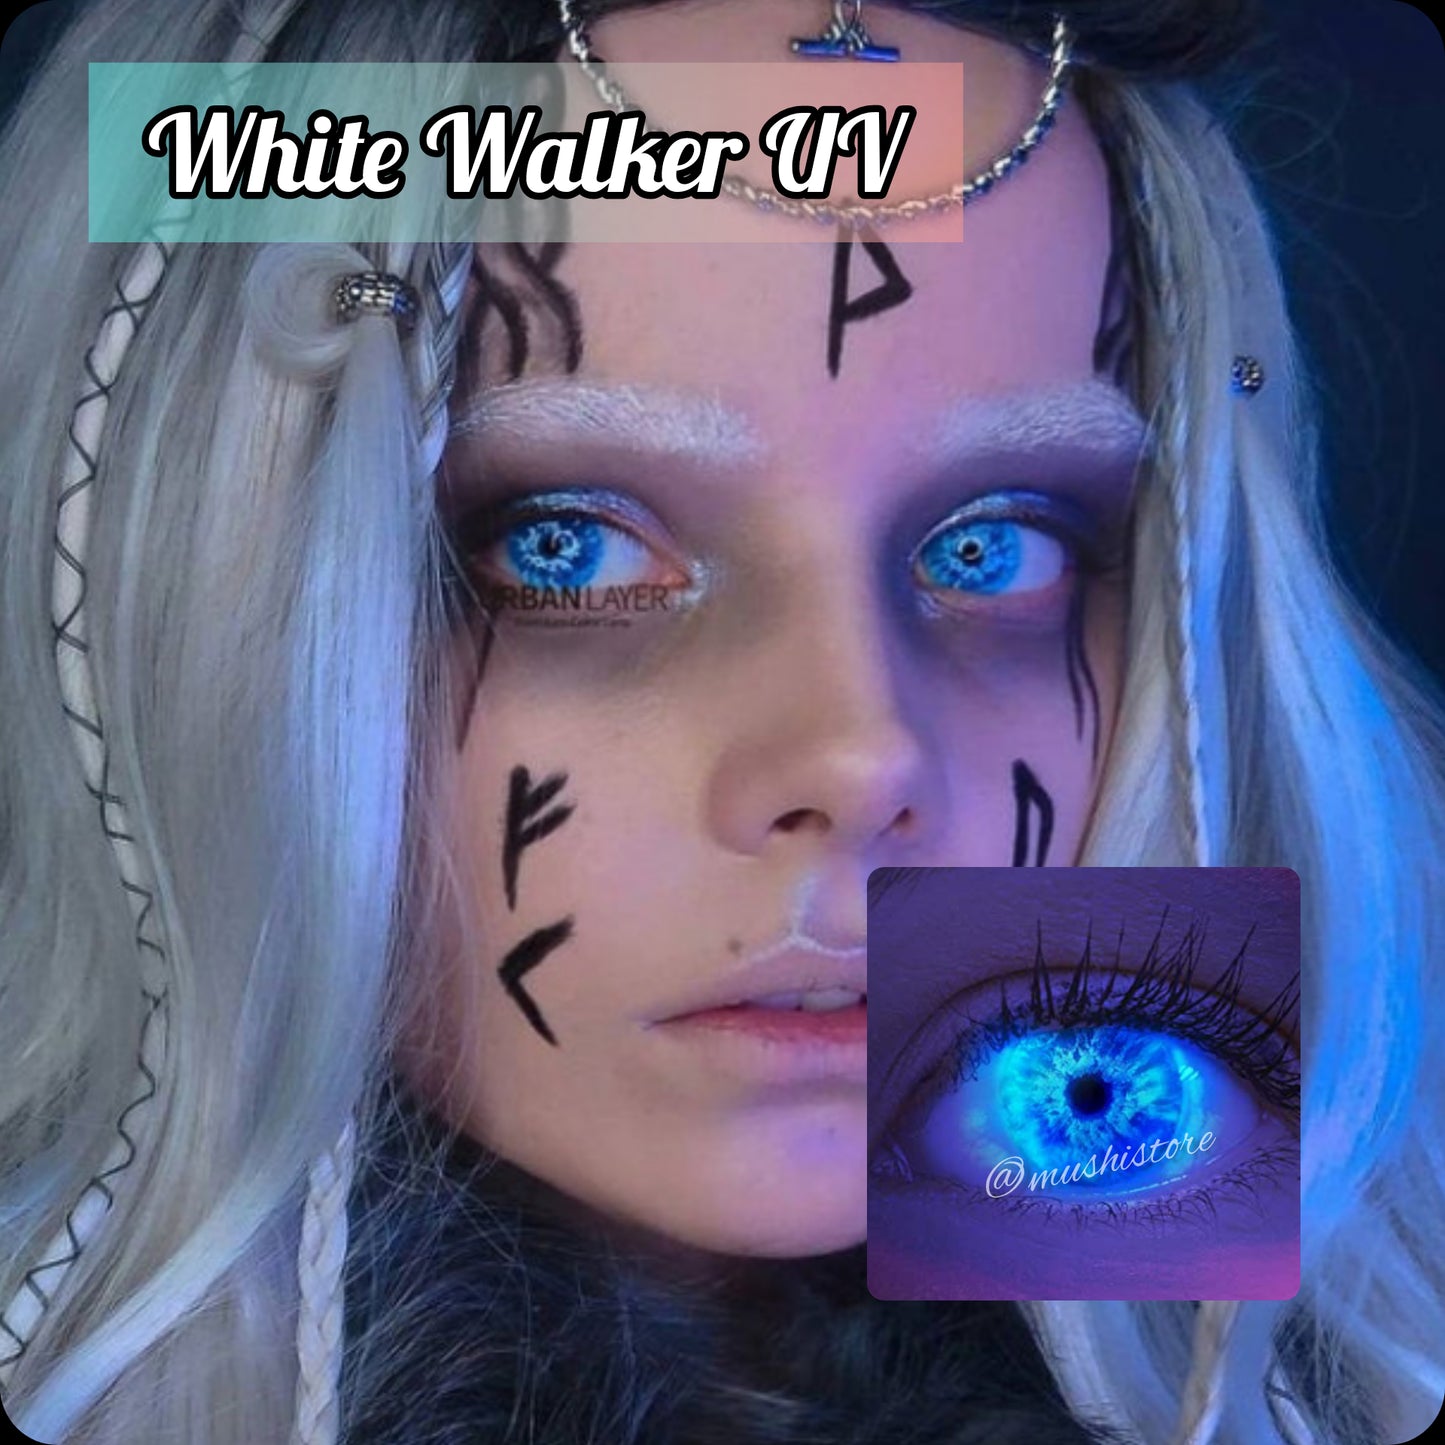 White Walker UV